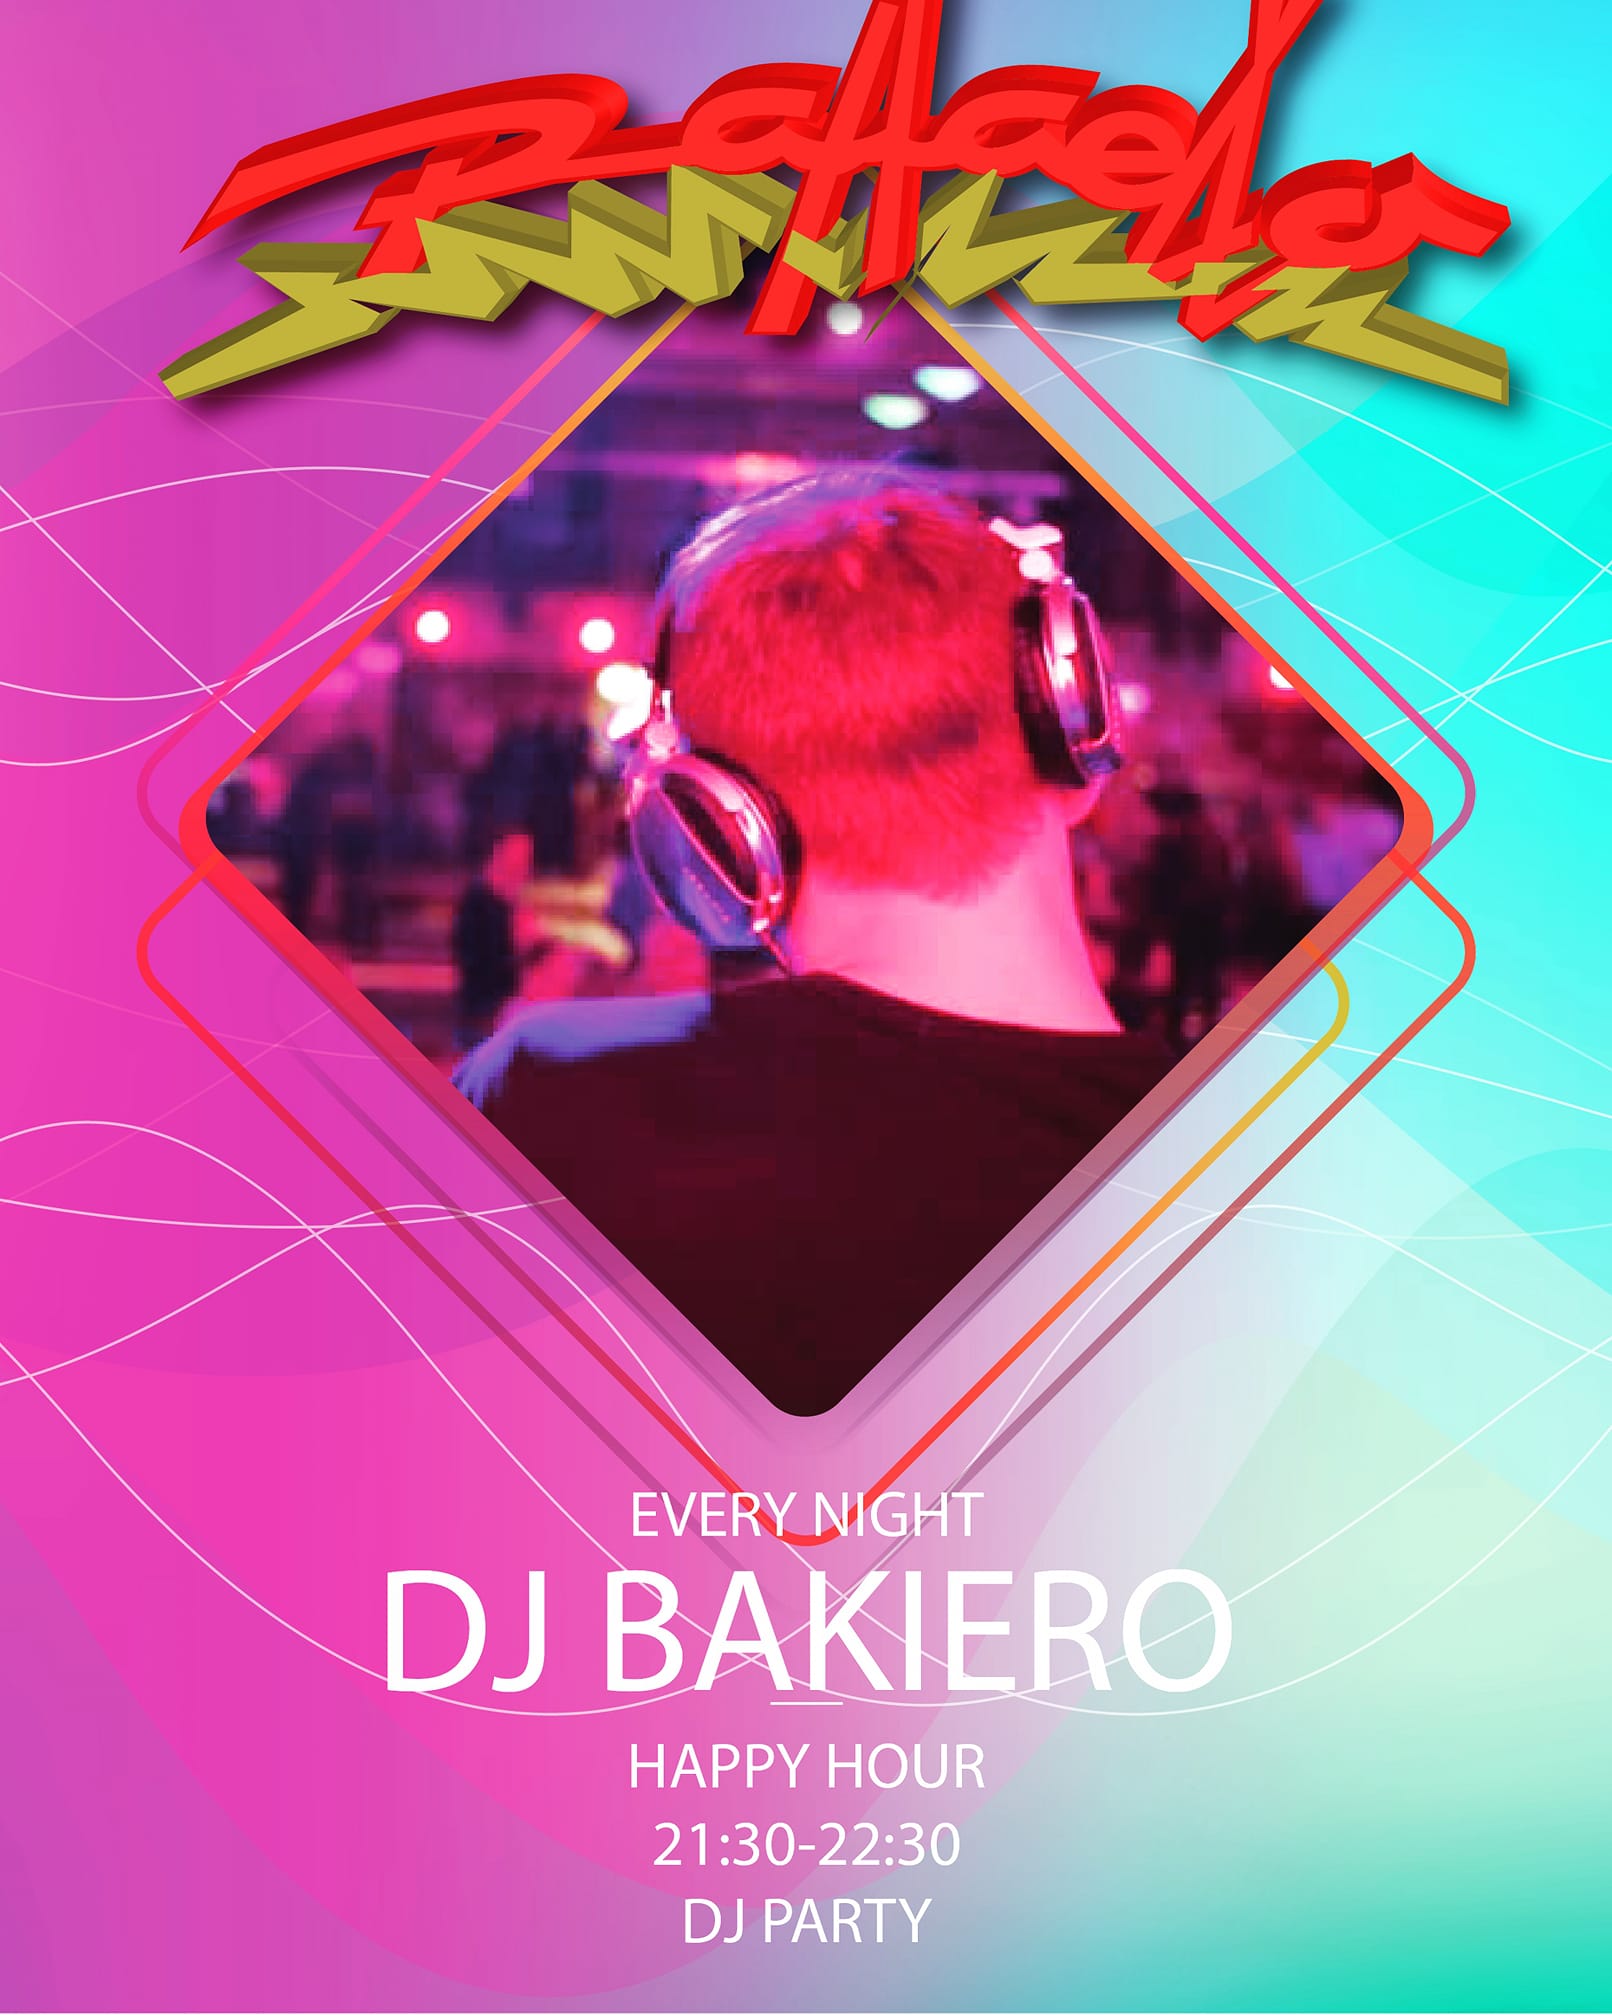 DJ Bakiero